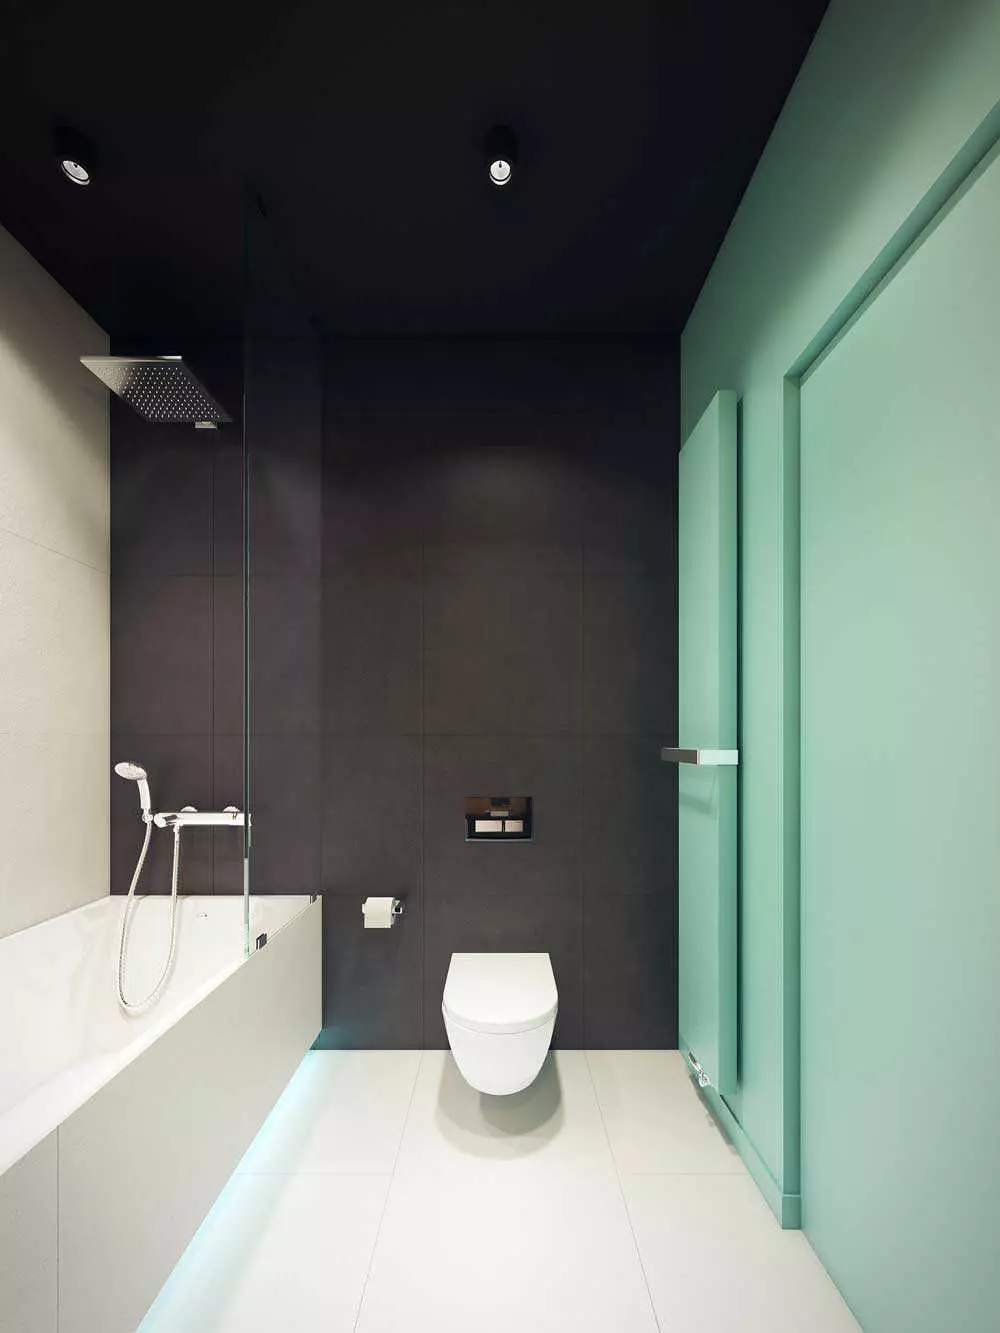 स्नानगृह डिझाइन 5 केव्ही. एम (111 फोटो): वॉशिंग मशीनसह आधुनिक इंटीररमध्ये सुंदर बाथरुमचे 5 स्क्वेअर मीटरचे प्रकल्प 10205_58